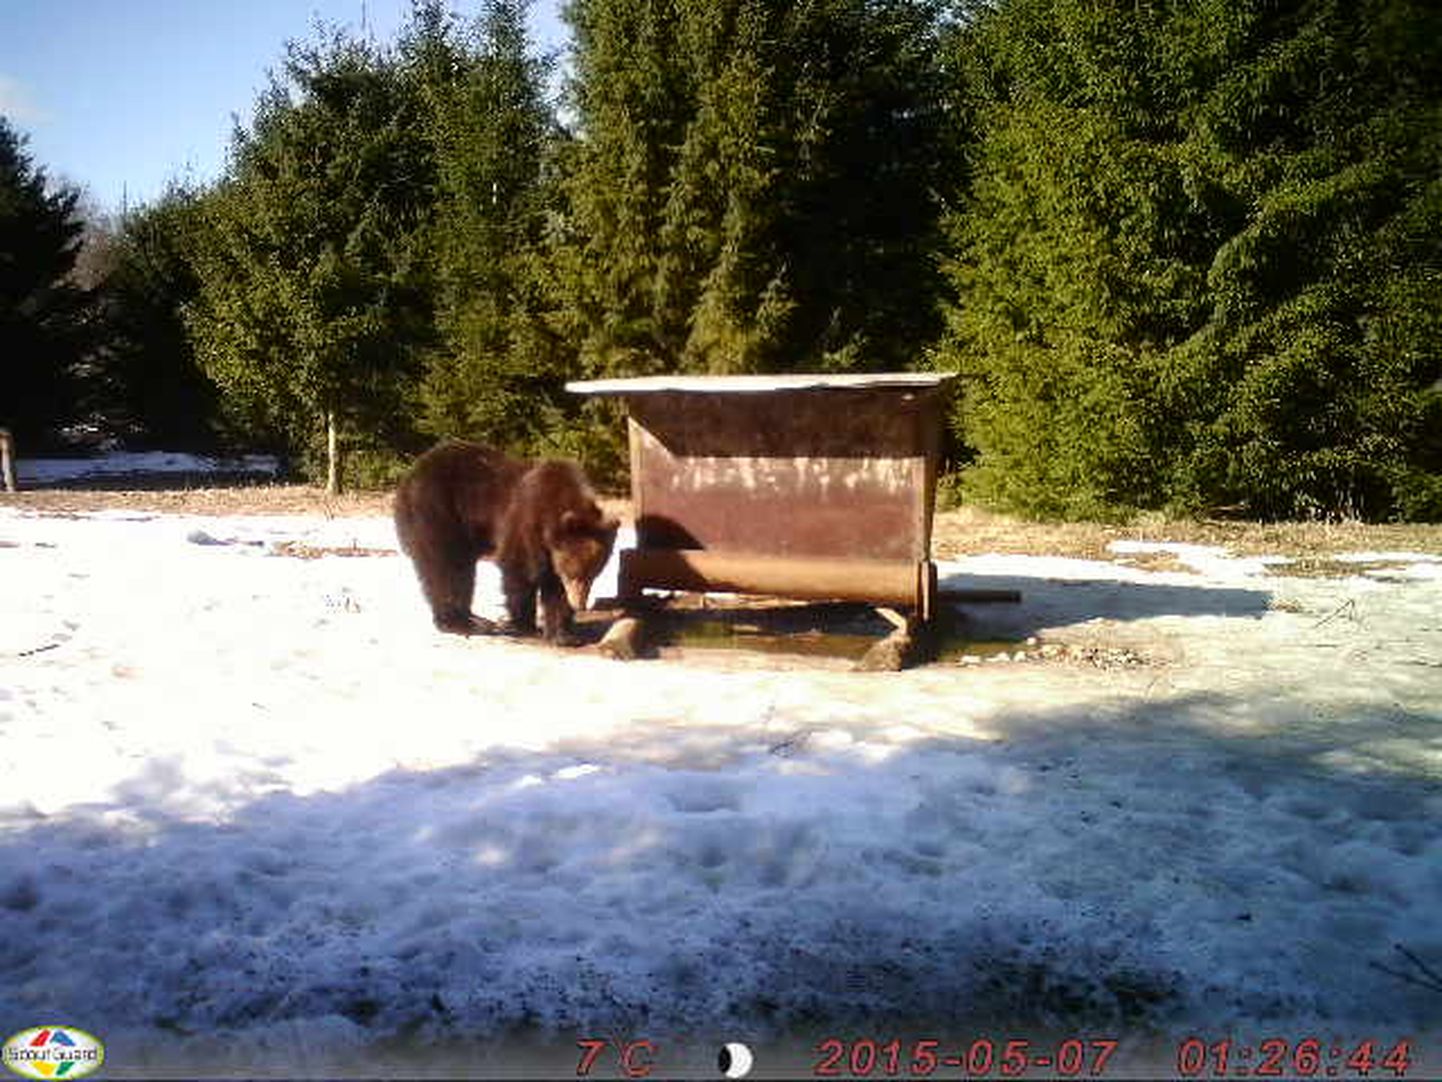 Karud suunduvad esmalt toitu otsima neile tuttavatesse söödakohtadesse.